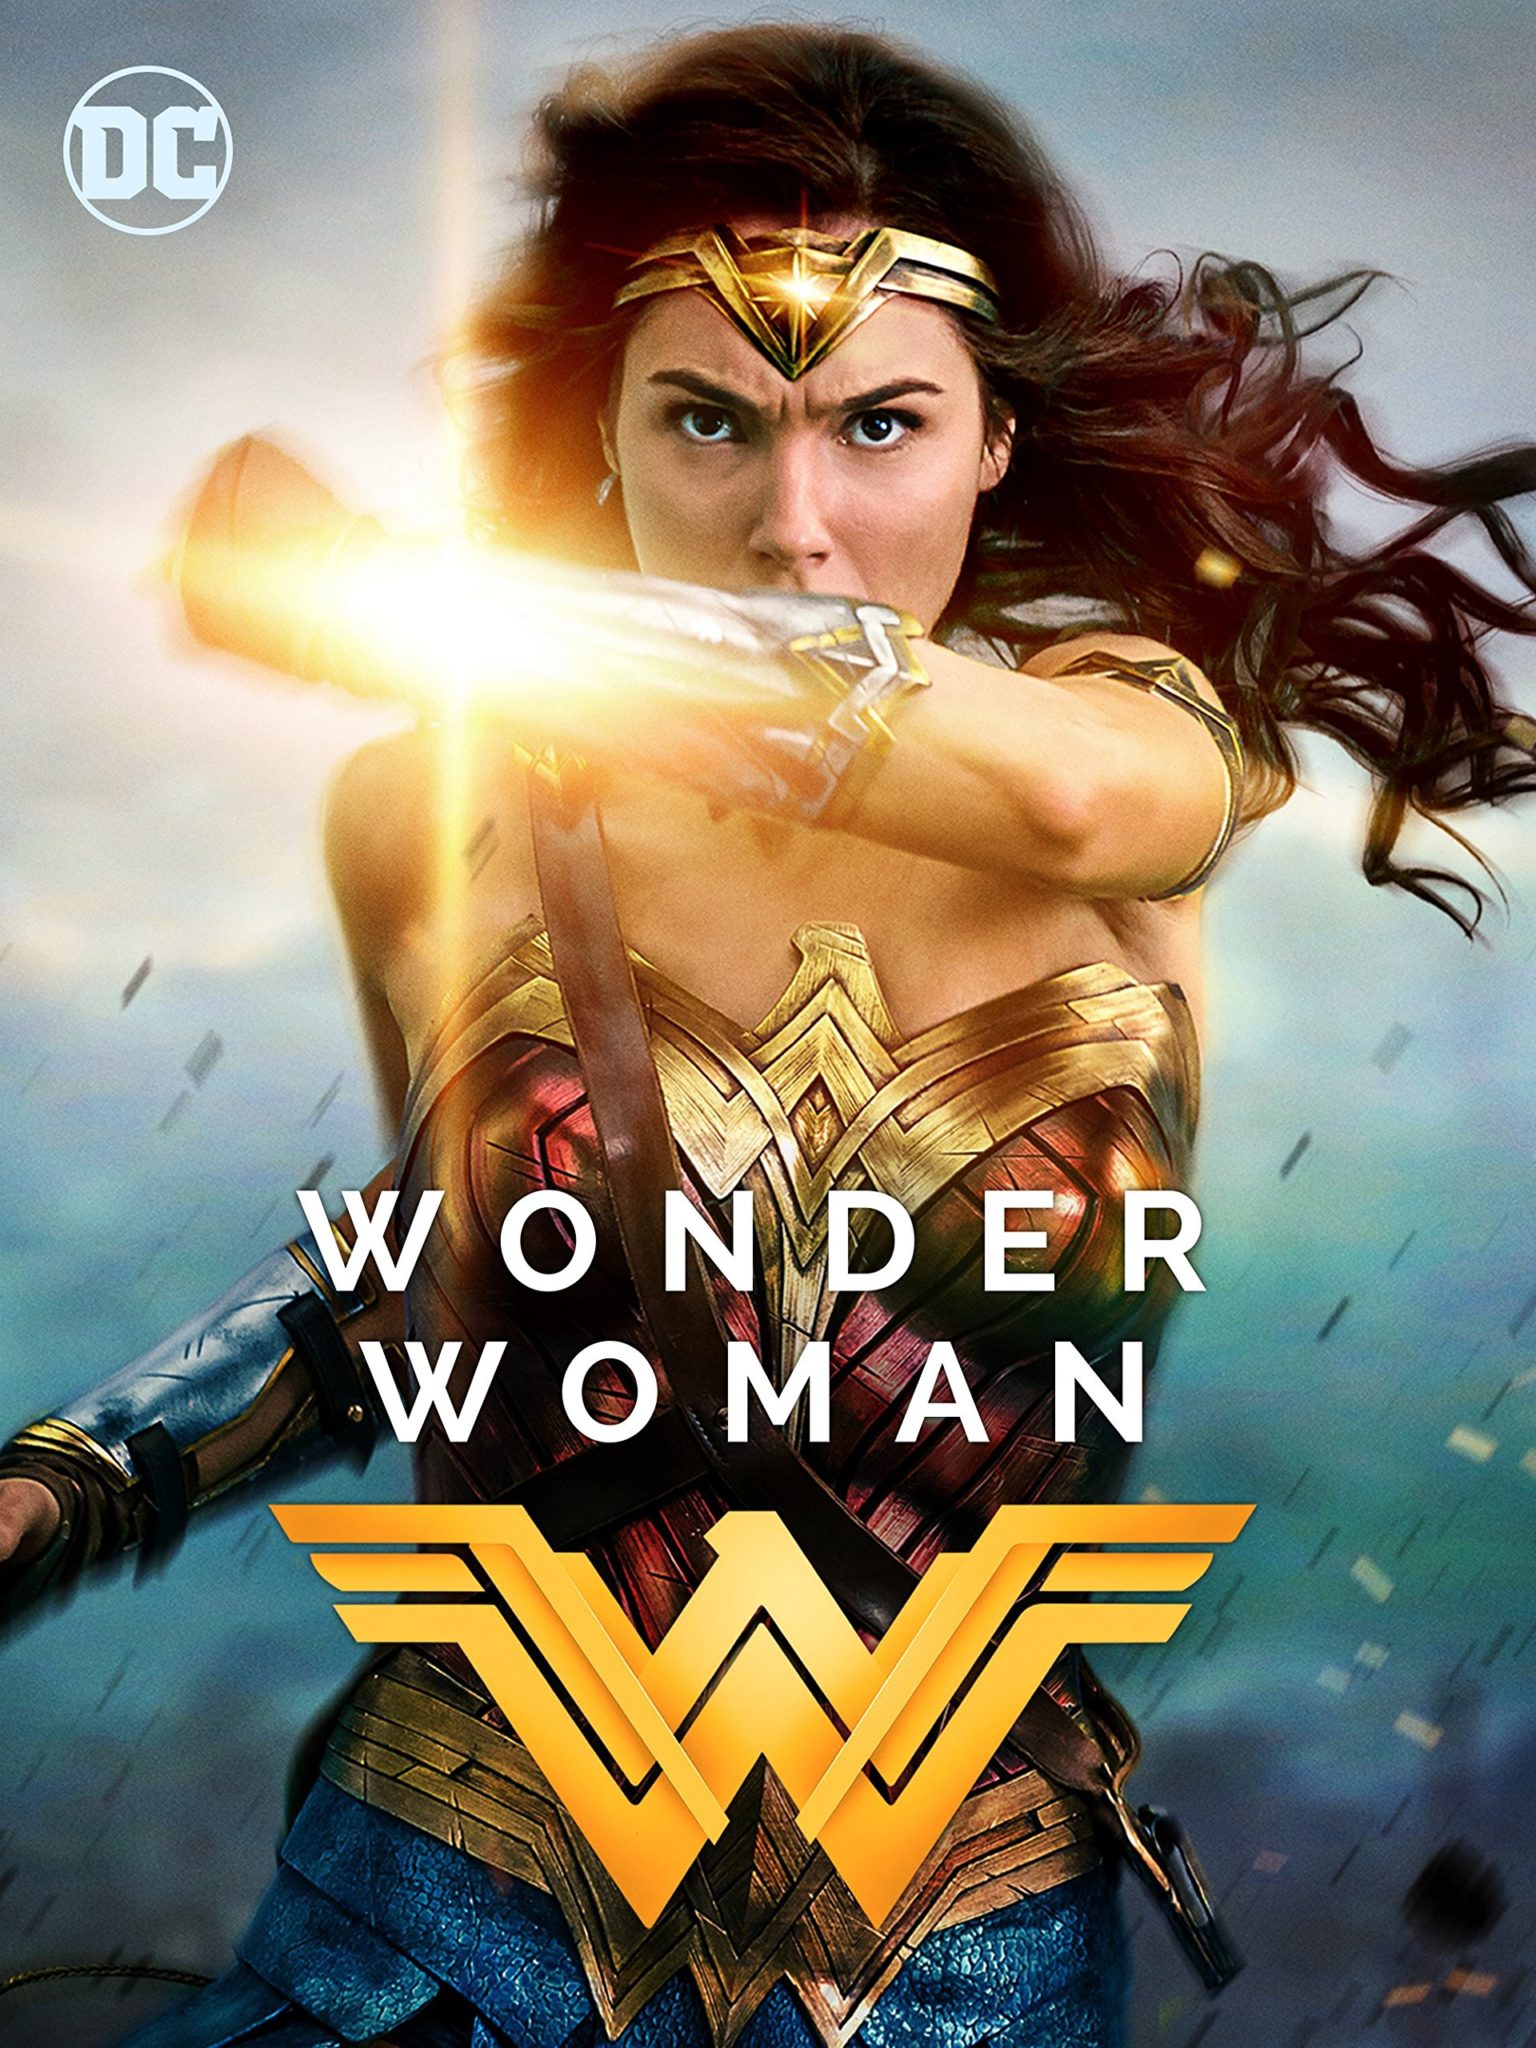 [review] Wonder Woman Nữ Siêu Anh Hùng Chưa Bao Giờ Tuyệt đến Thế Bông Ss